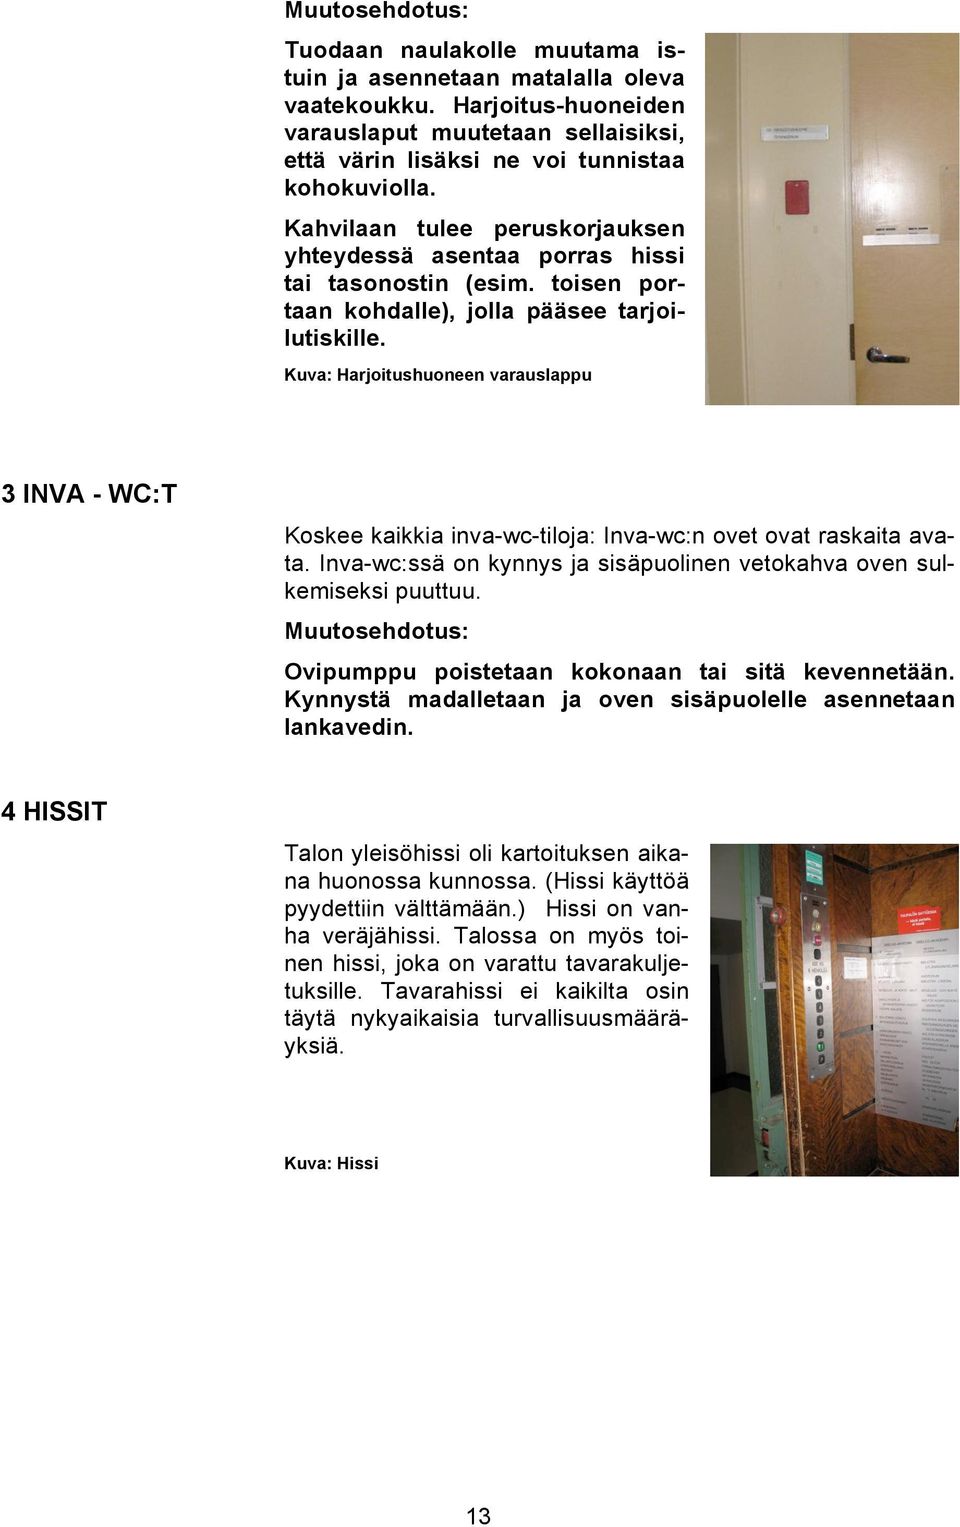 Kuva: Harjoitushuoneen varauslappu 3 INVA - WC:T Koskee kaikkia inva-wc-tiloja: Inva-wc:n ovet ovat raskaita avata. Inva-wc:ssä on kynnys ja sisäpuolinen vetokahva oven sulkemiseksi puuttuu.